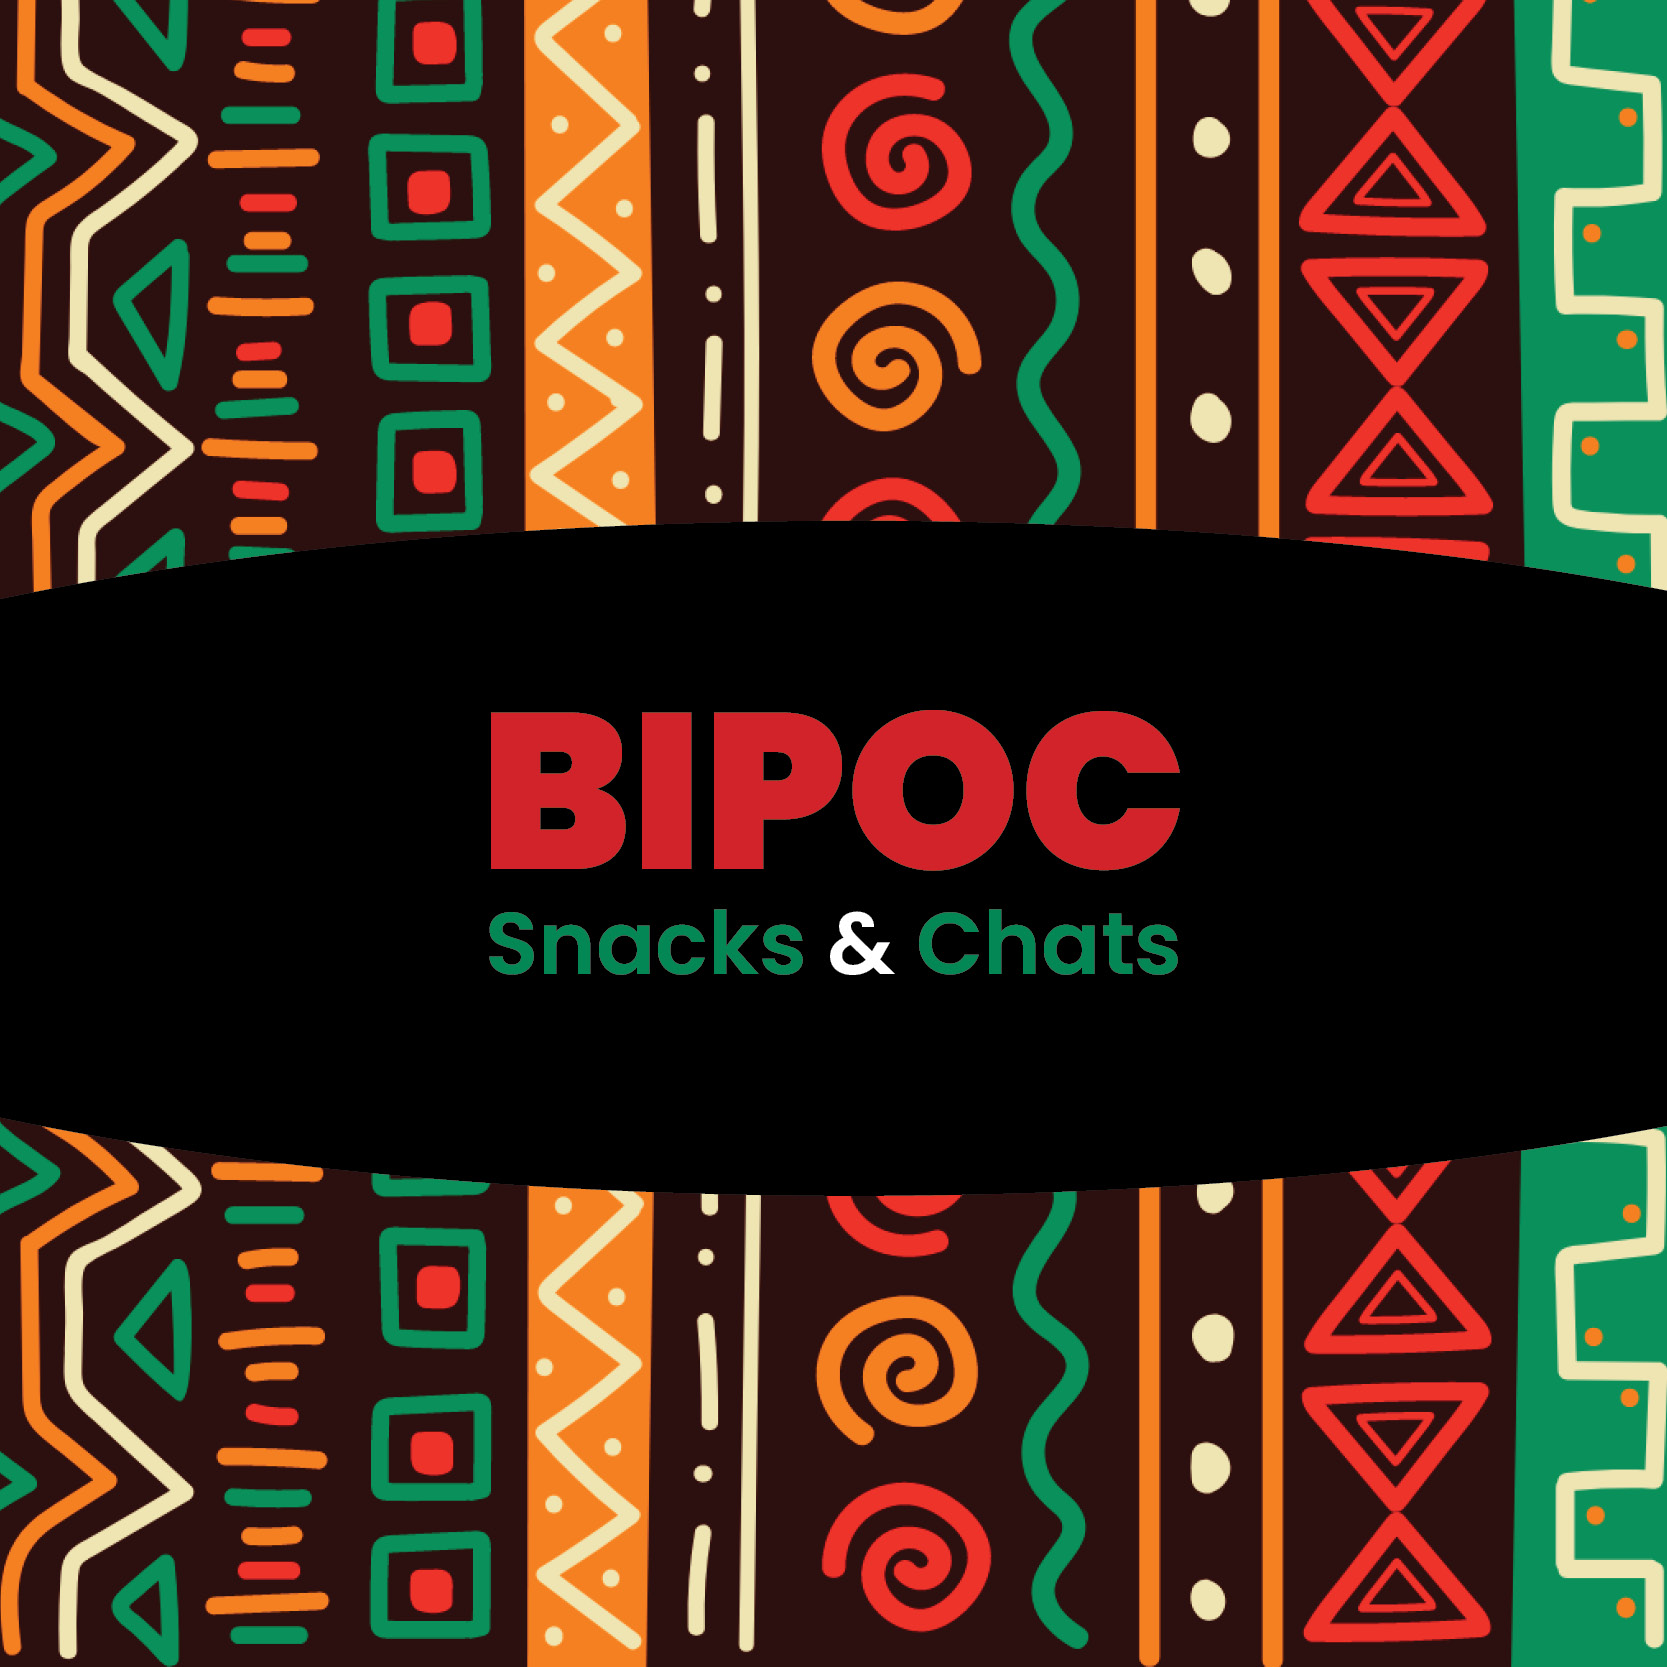 BIPOC Snacks & Chats